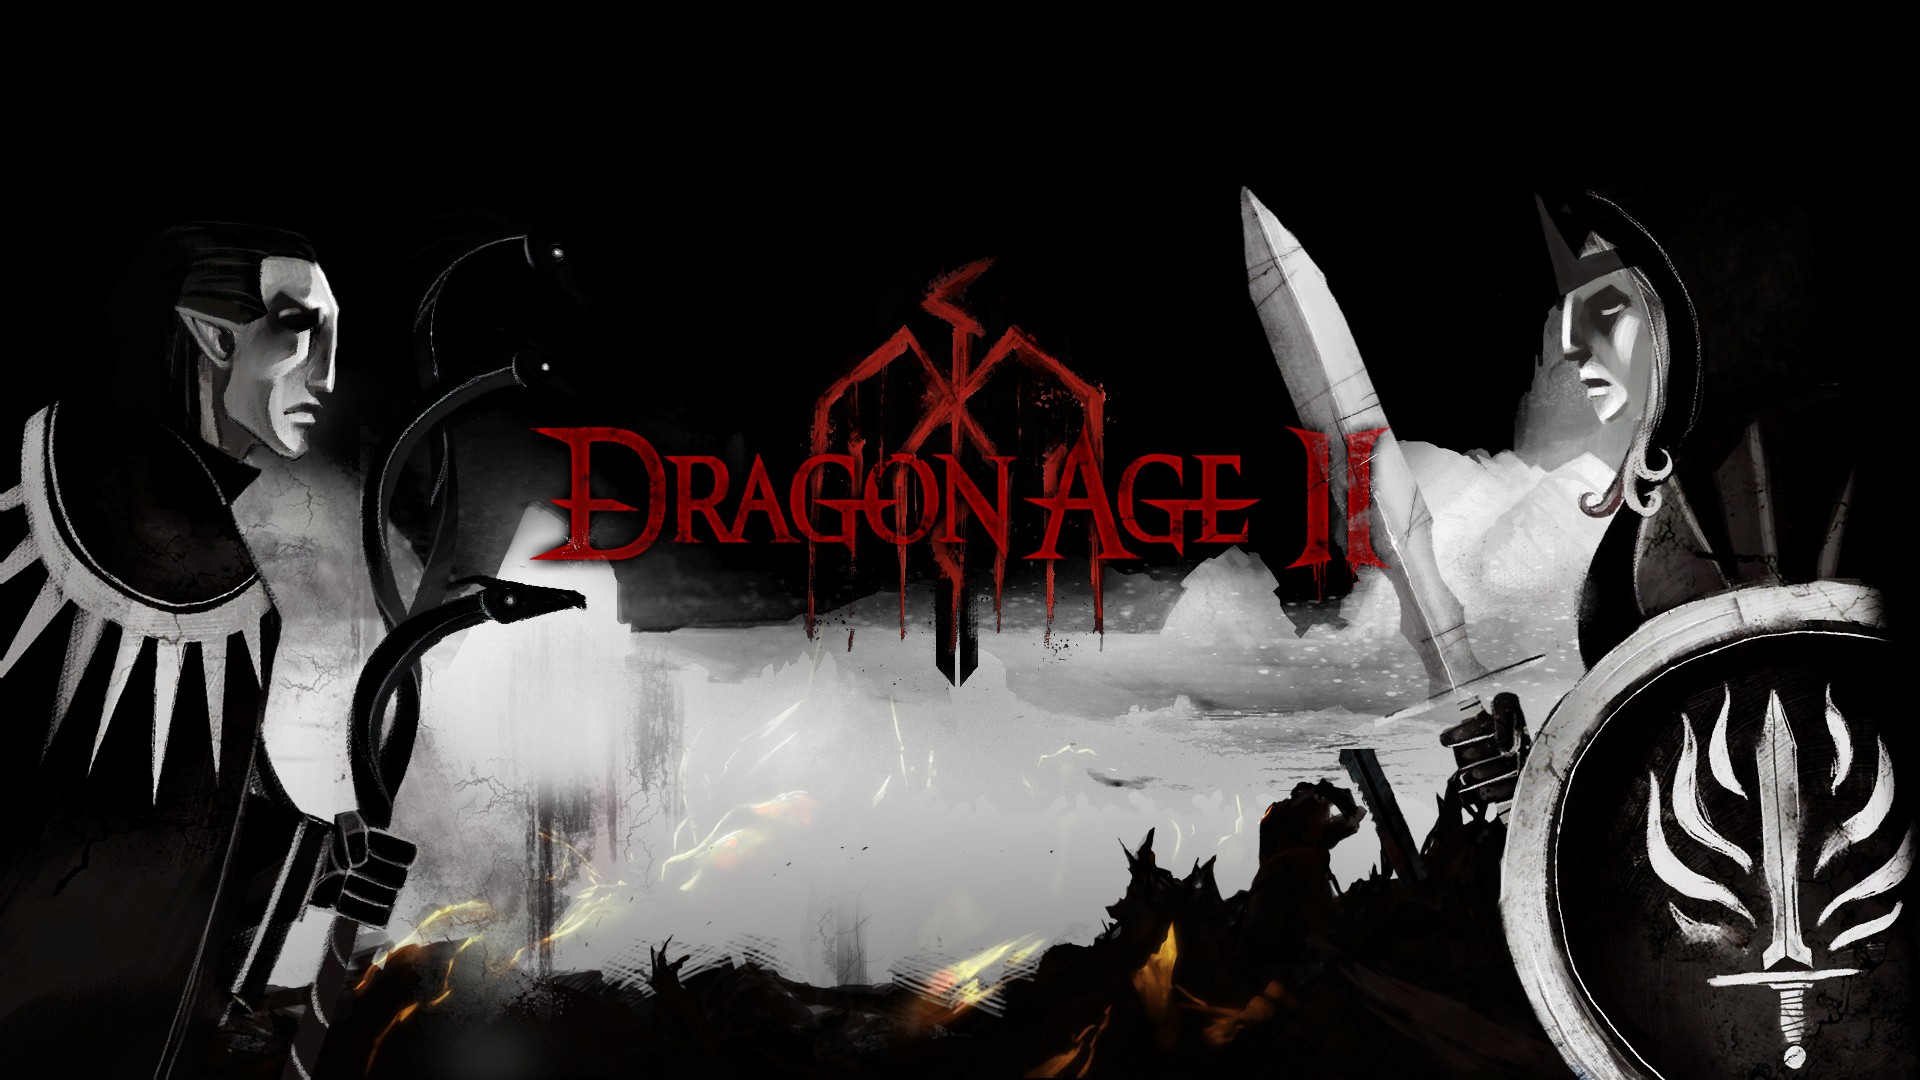 dragon age, video game, dragon age ii